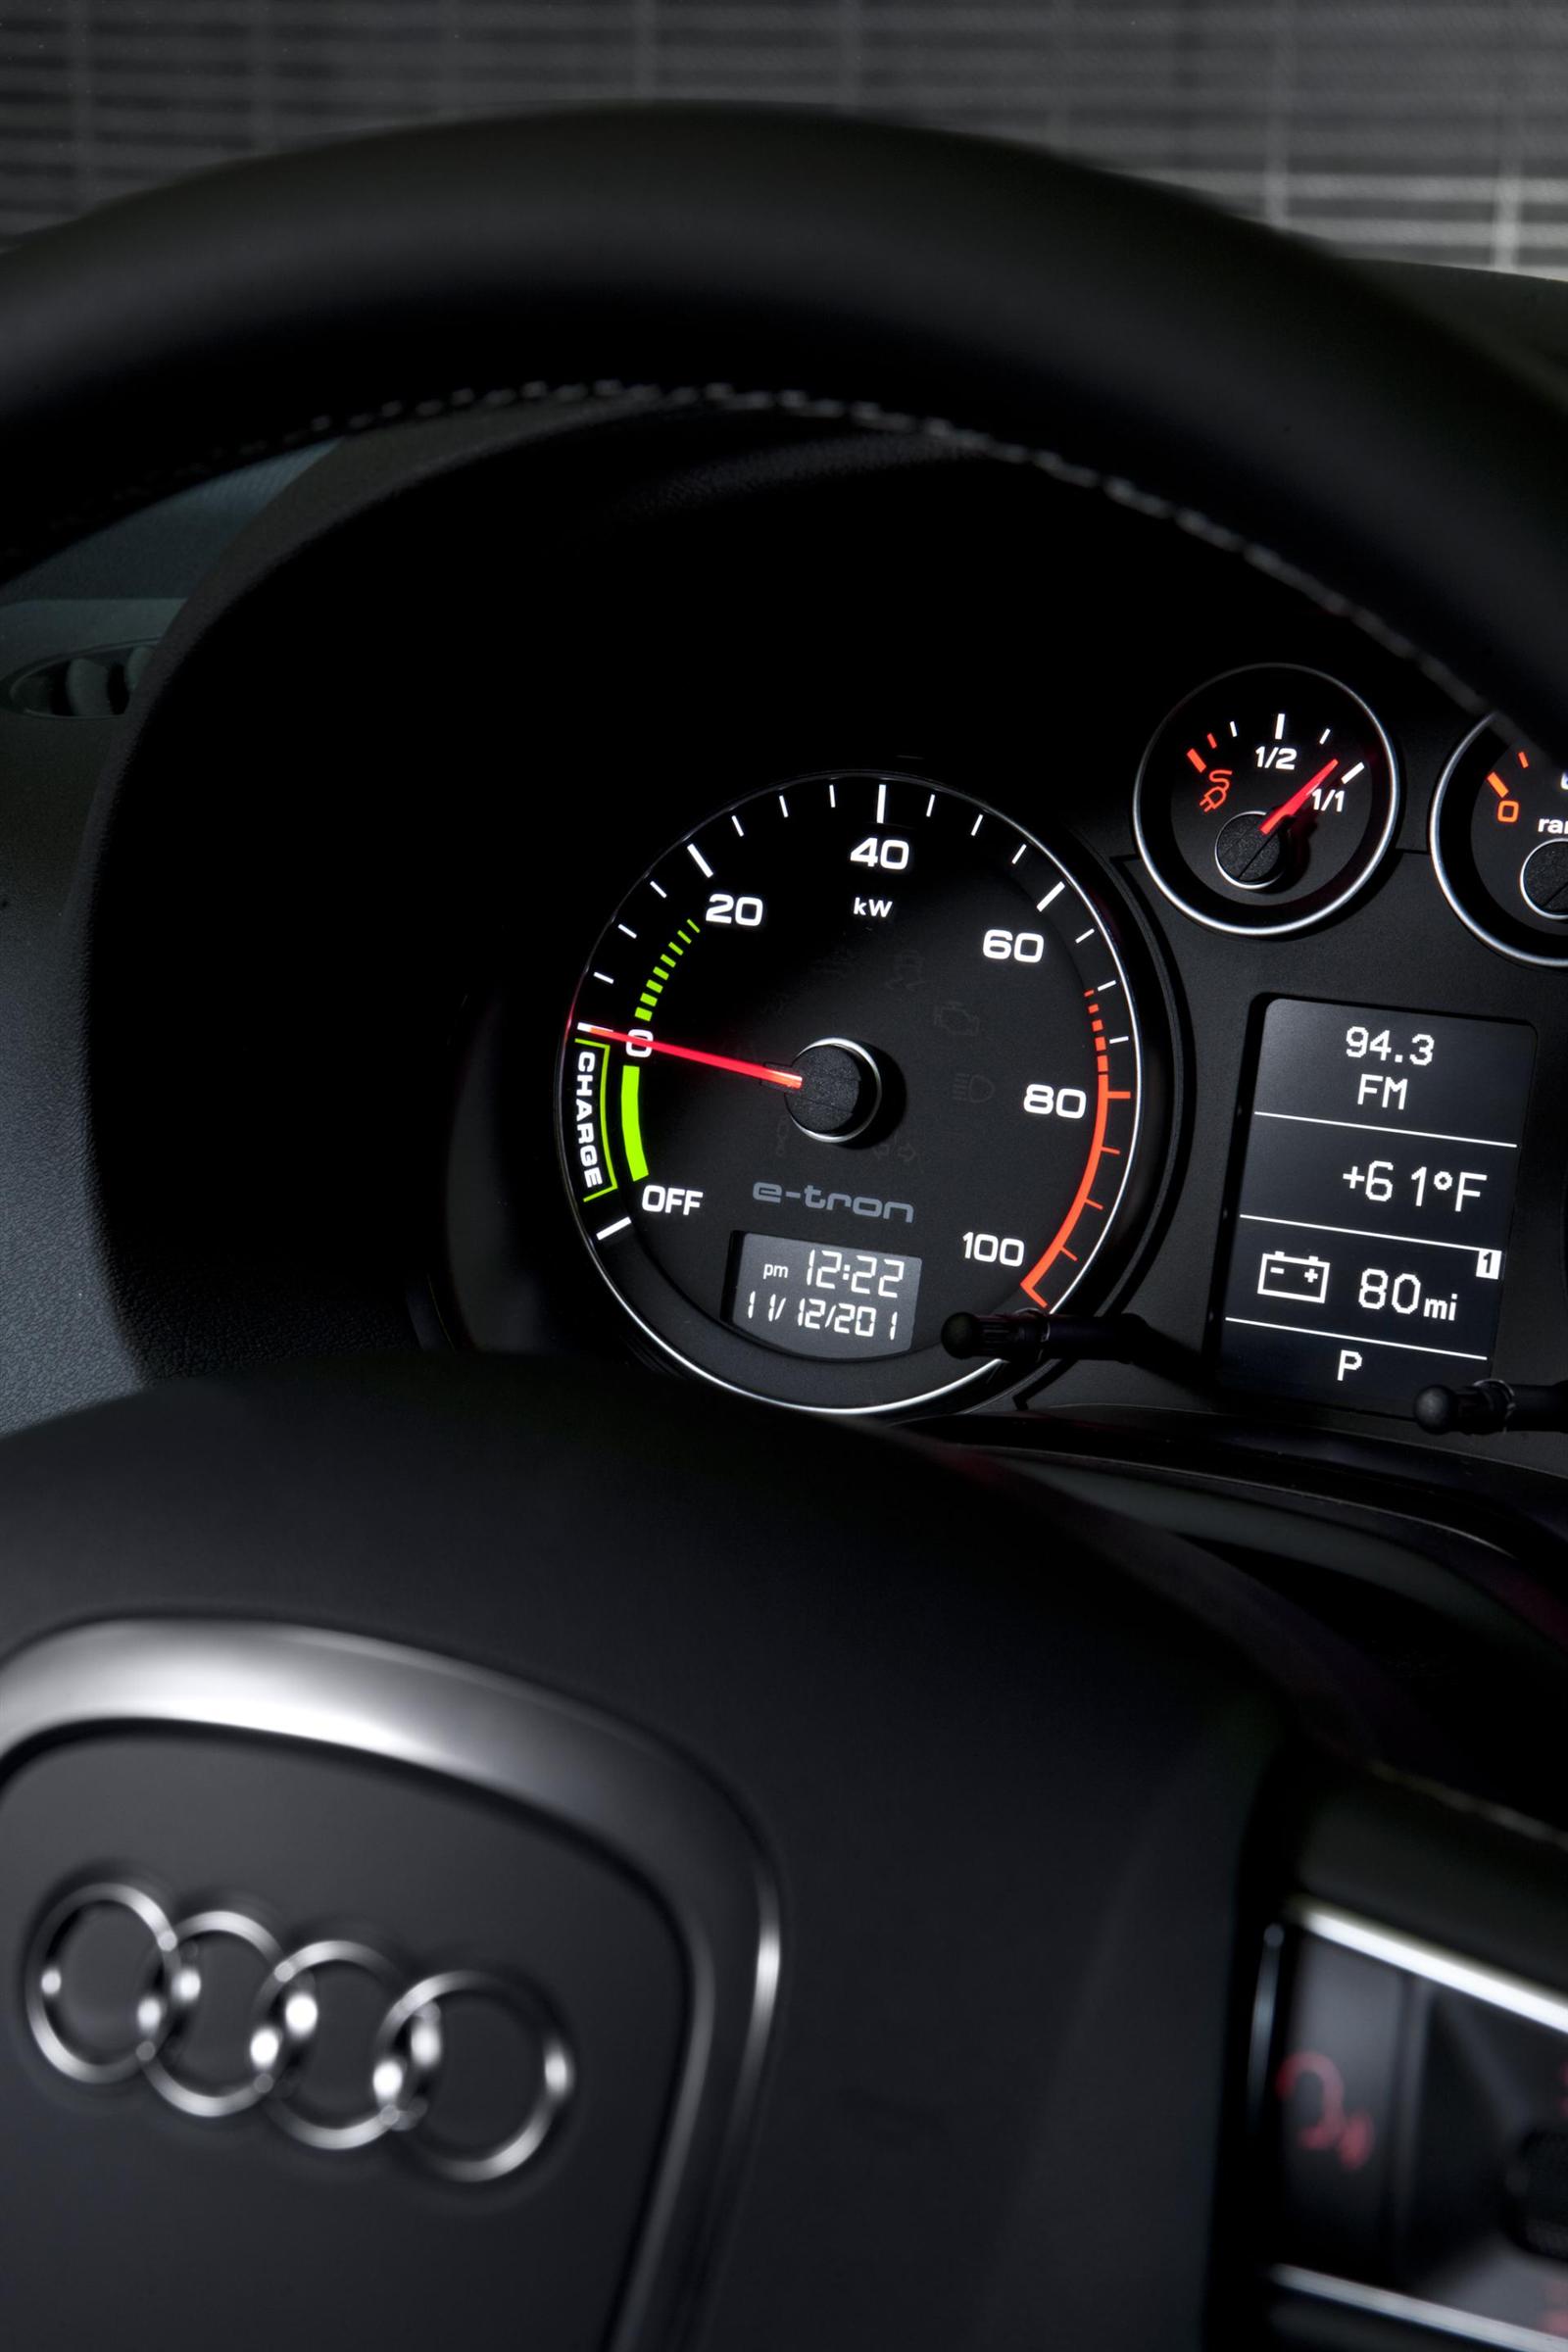 2012 Audi A3 e-tron Electric